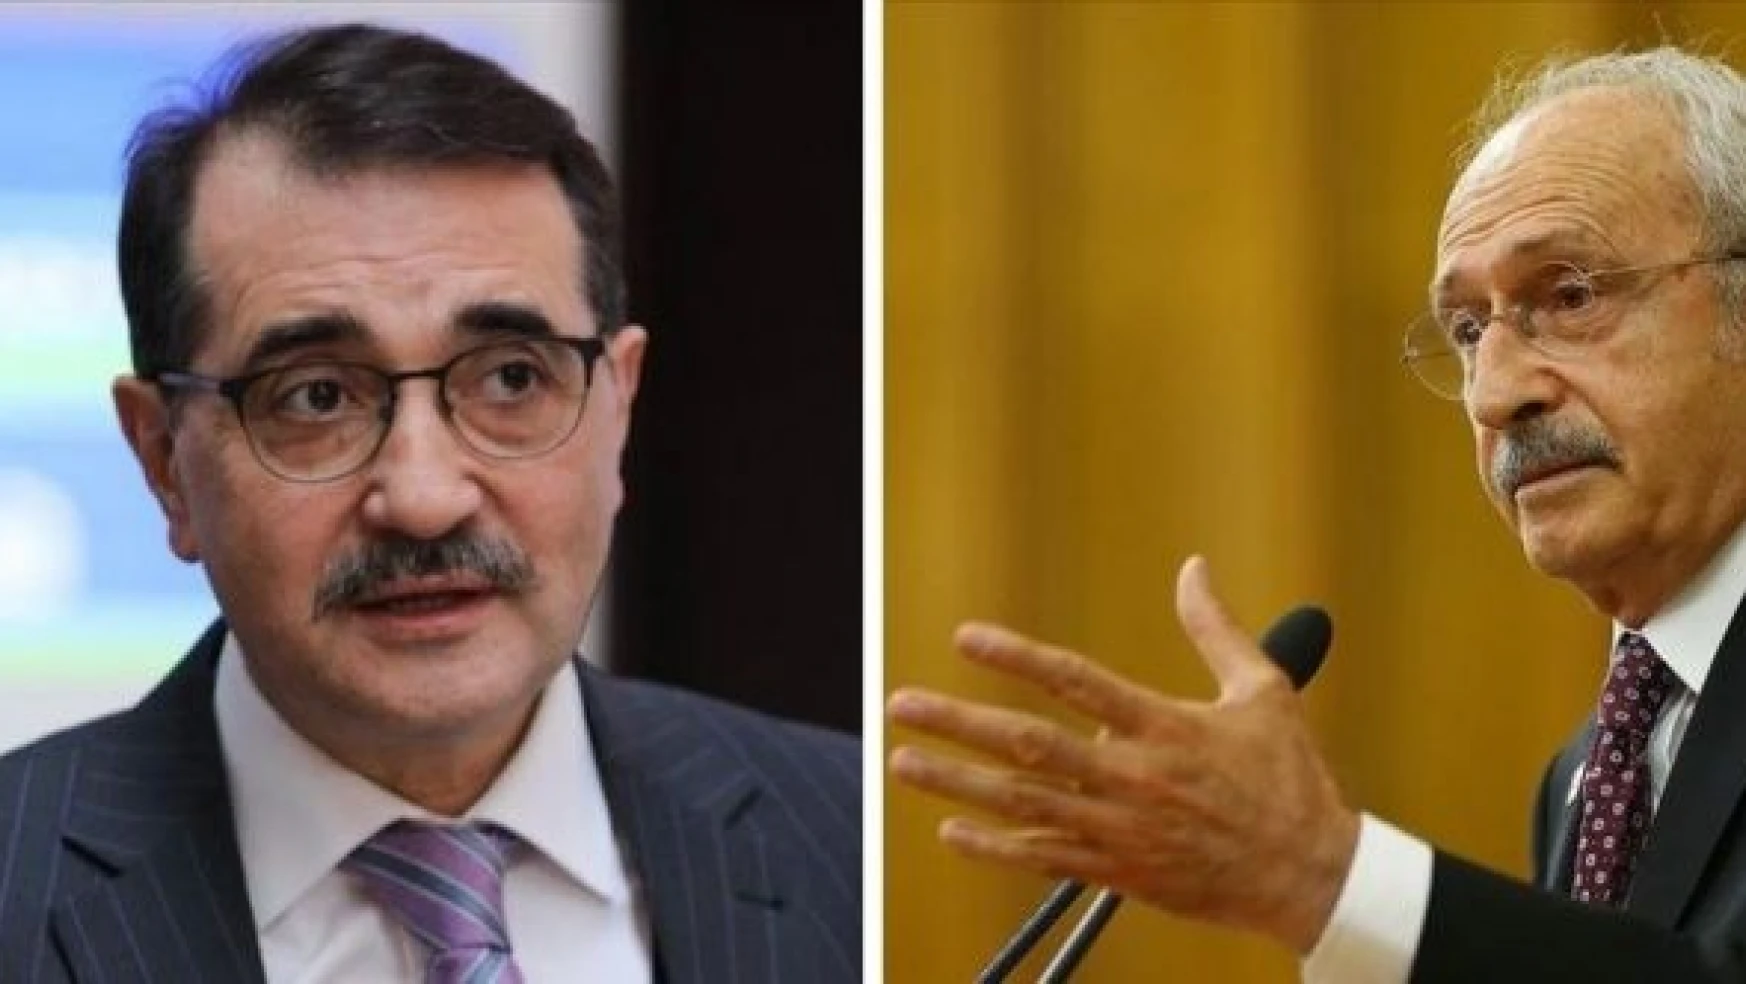 CHP Genel Başkanı Kemal Kılıçdaroğlu:&quotEy bakan, bu yazdığın yalansa, hemen istifa edecek misin?"